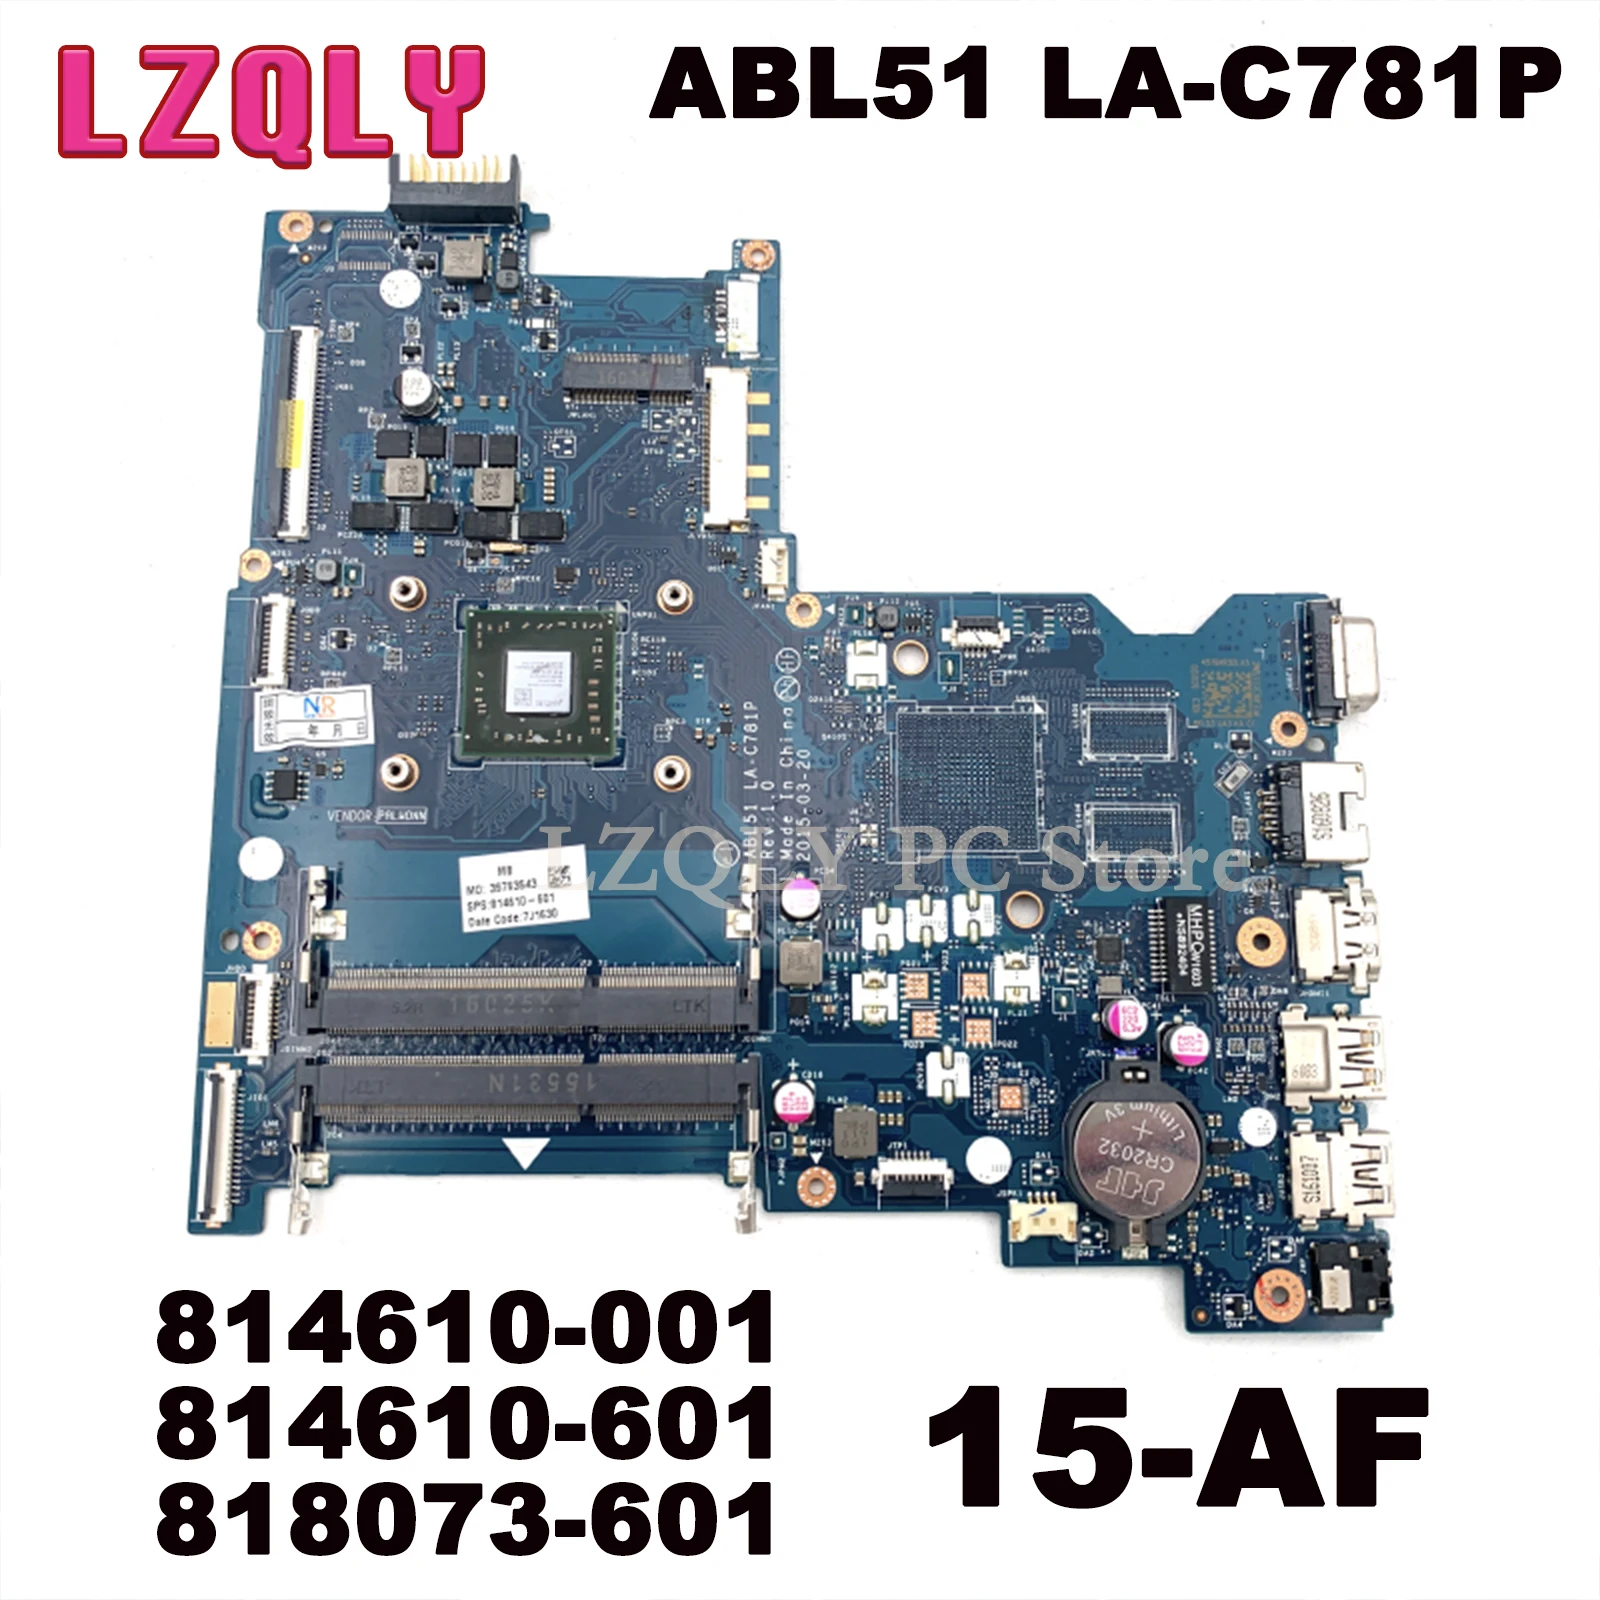 

LZQLY For HP Pavillion 15-AF ABL51 LA-C781P 814610-001 814610-601 818073-601 Laptop Motherboard Main Board Full Test